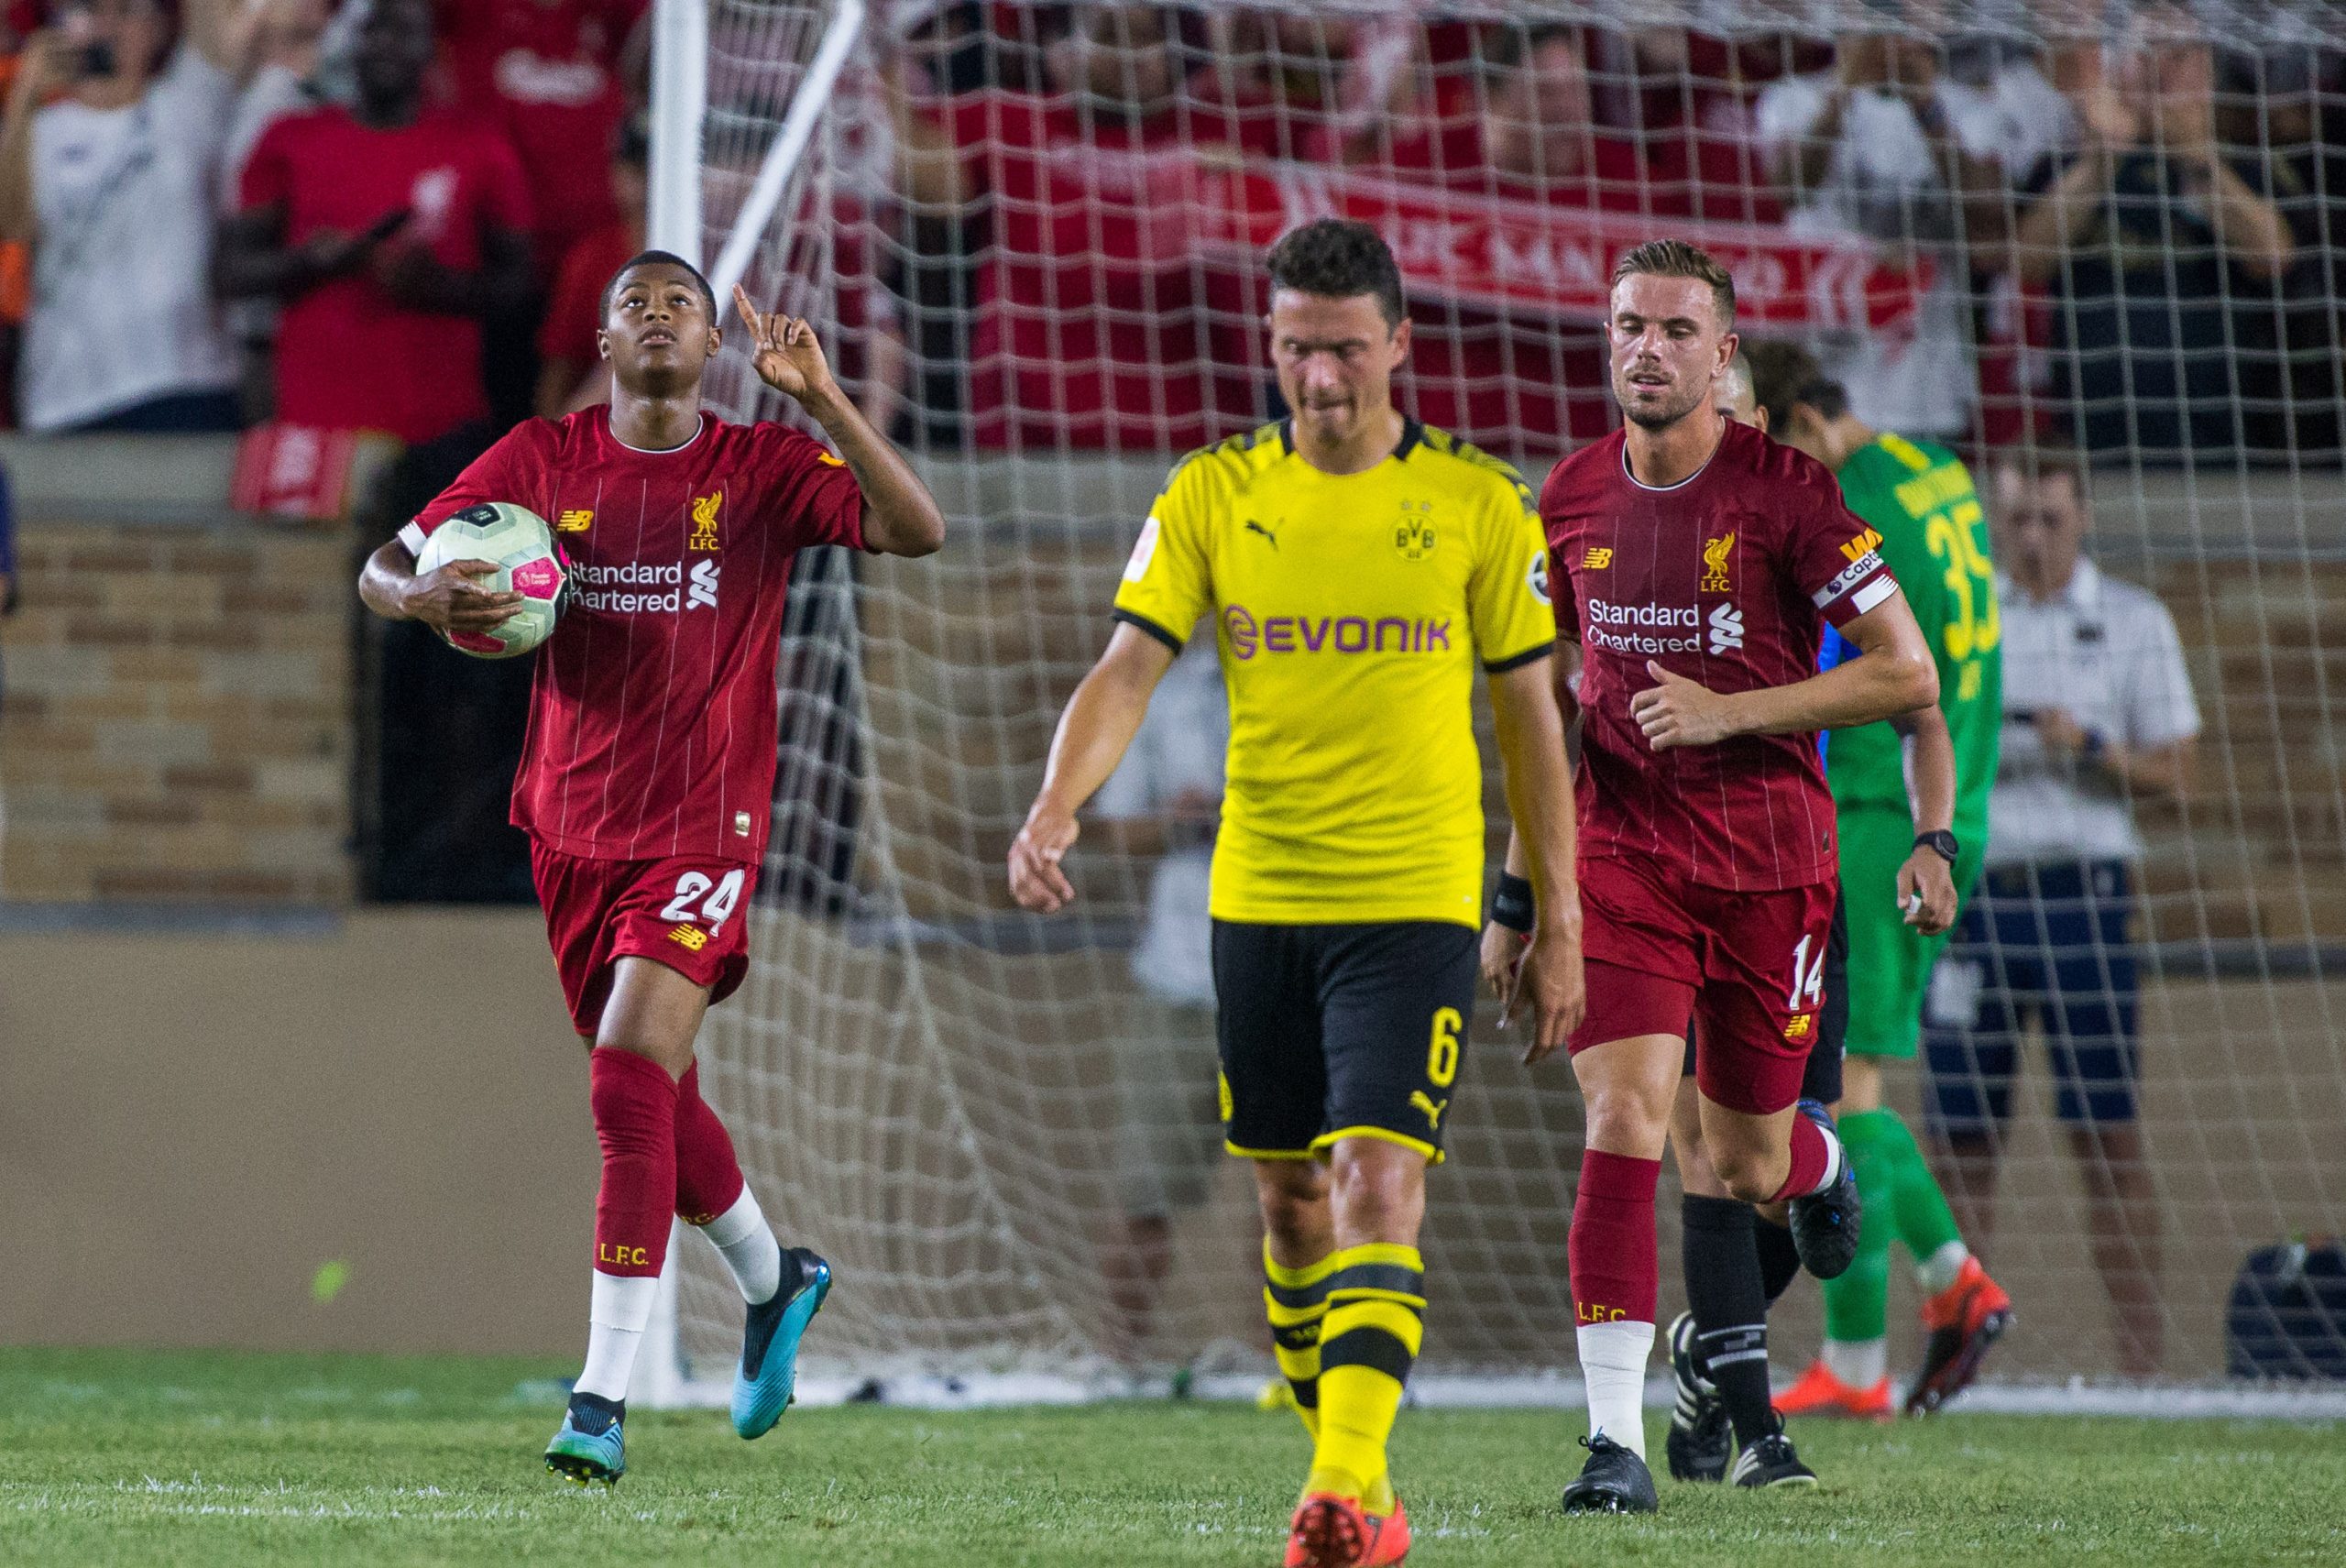 Soccer: Borussa Dortmund at Liverpool